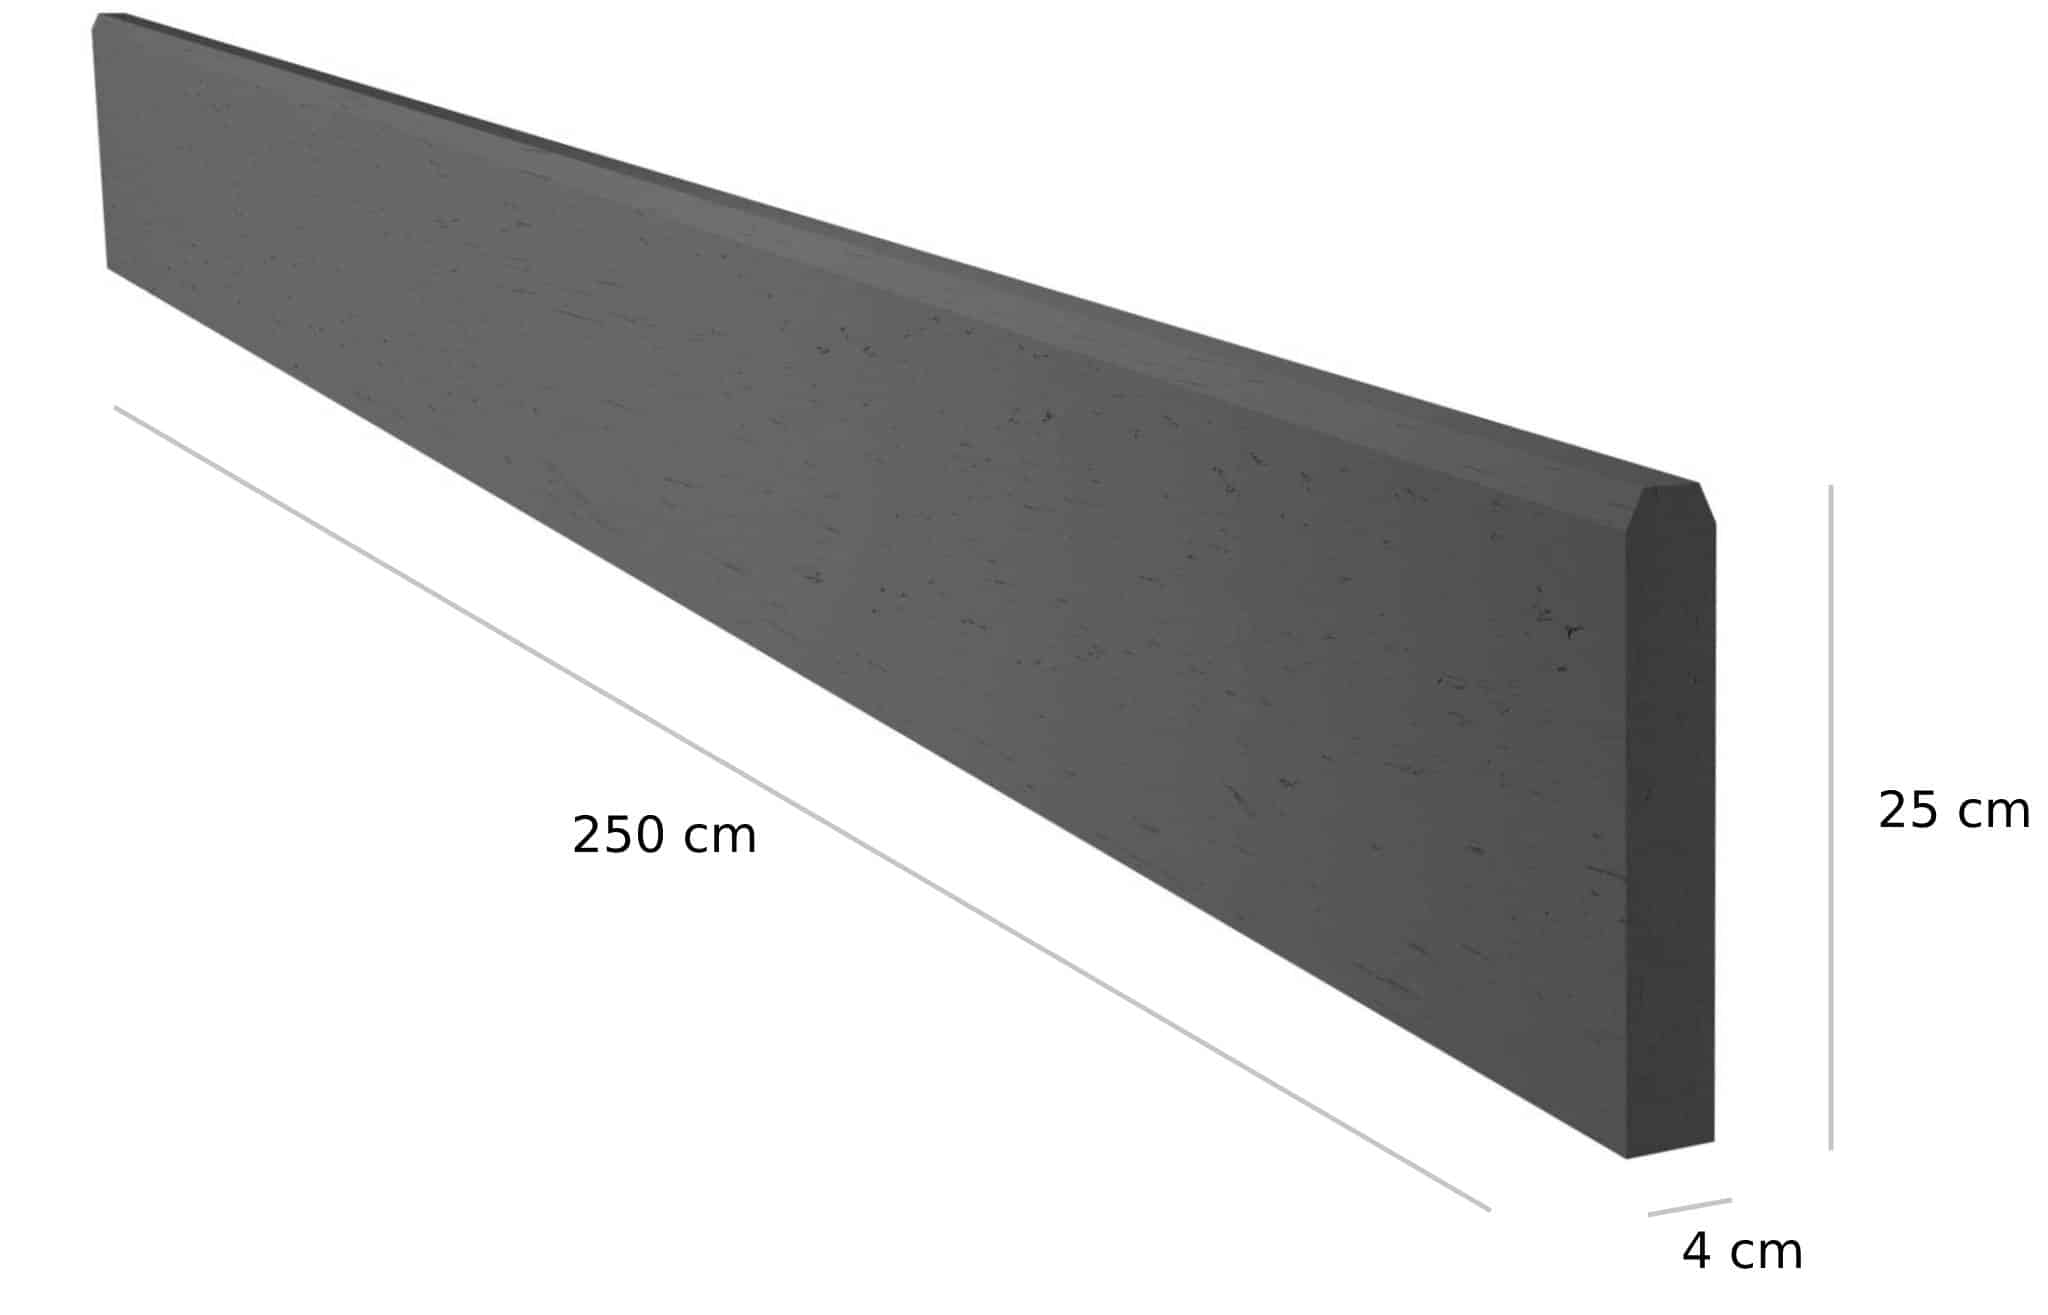 Wymiary podmurówki betonowej - 250 cm x 25 cm x 4 cm